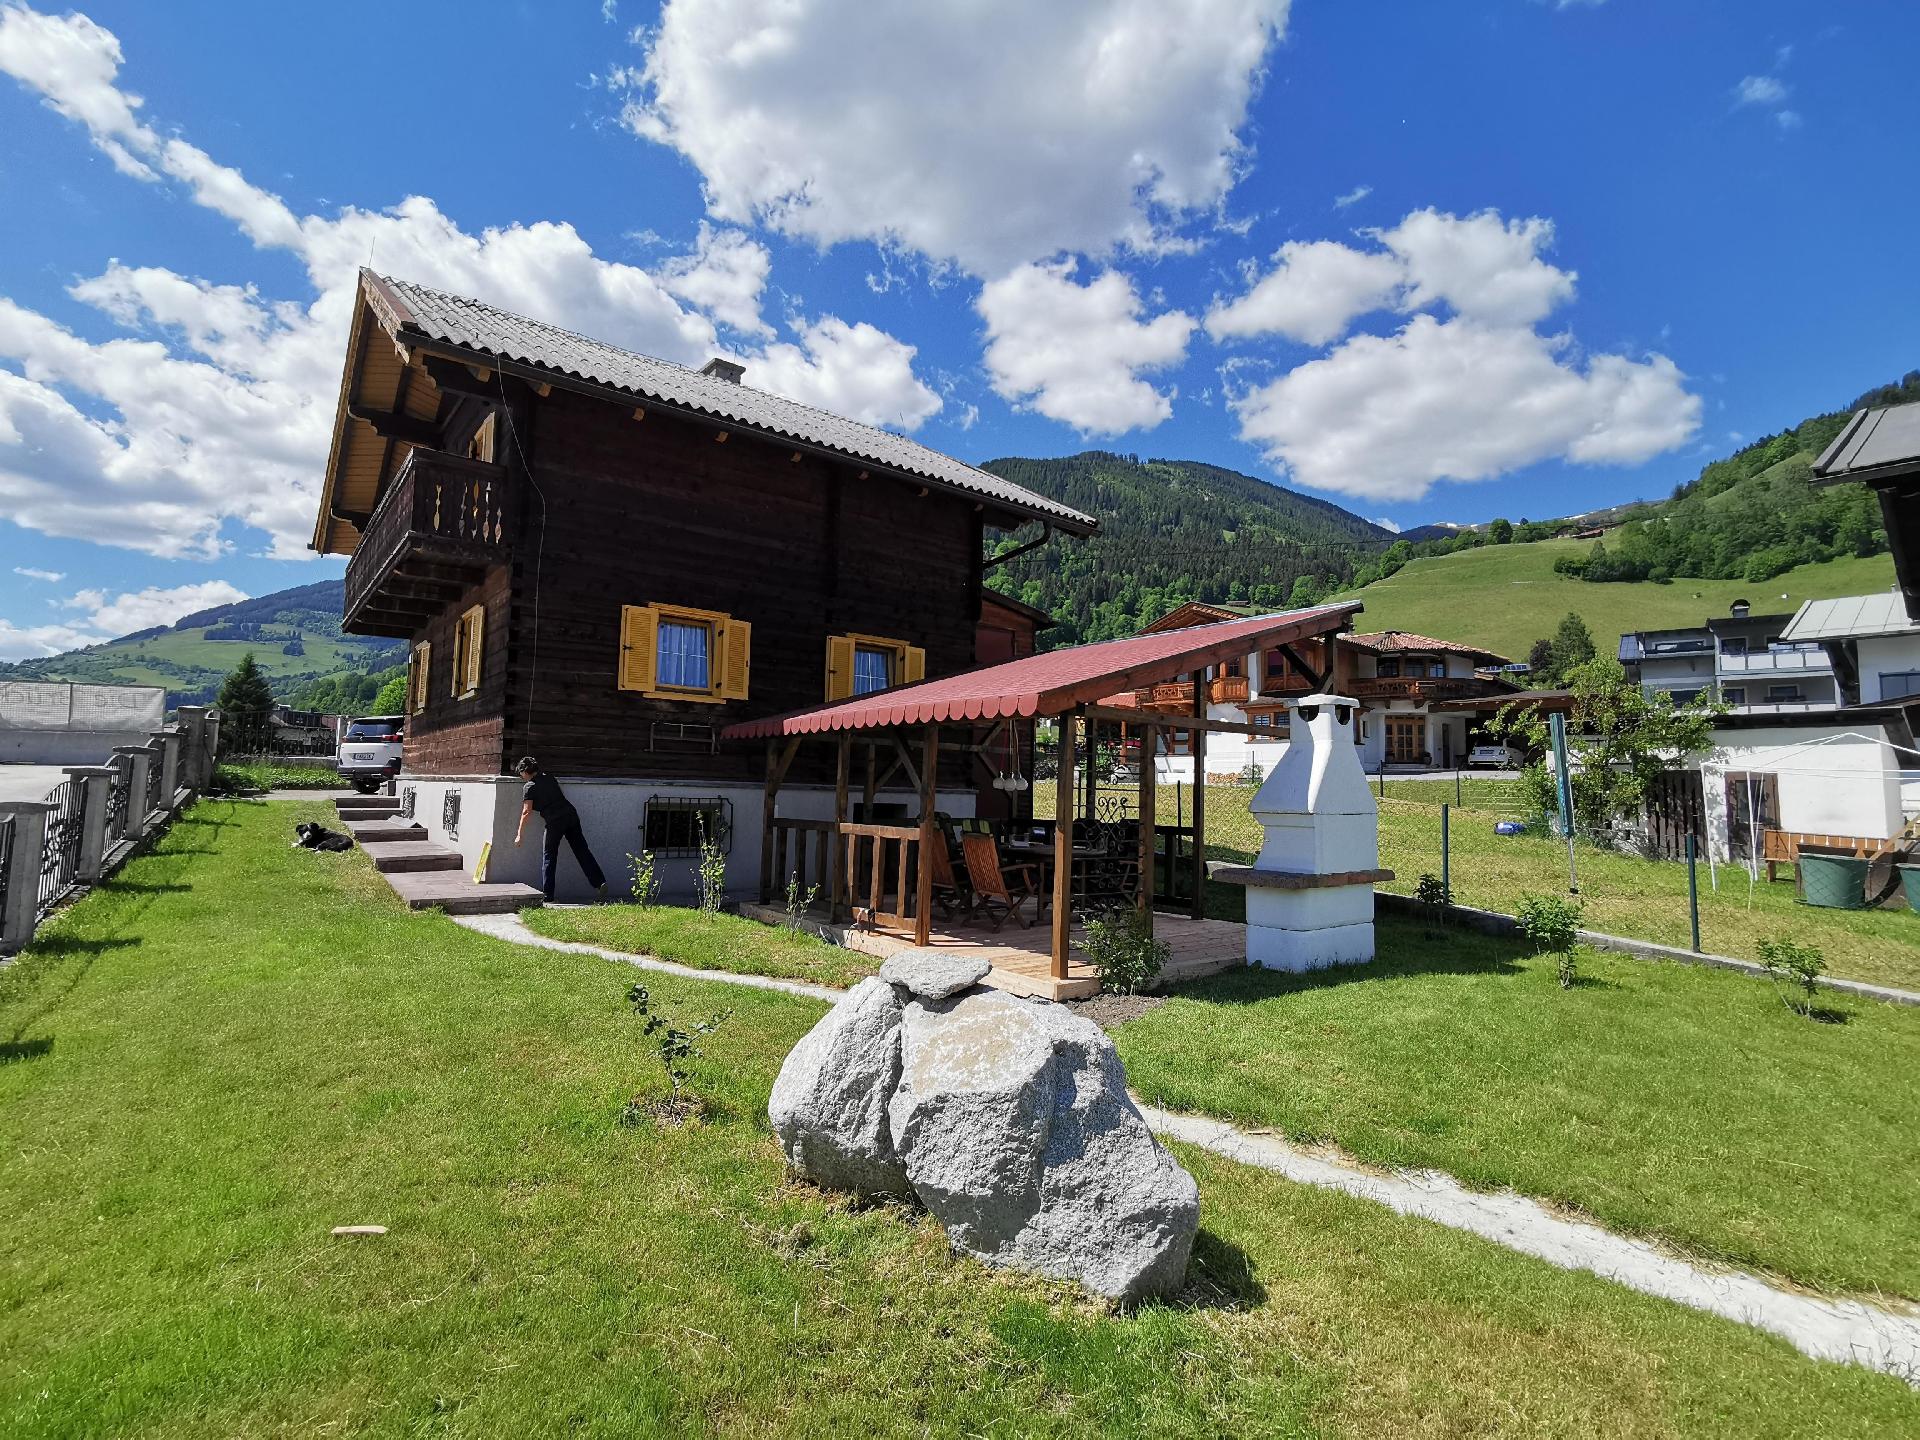 Ferienhaus in Uttendorf mit Grill, Garten und Terr  in Österreich